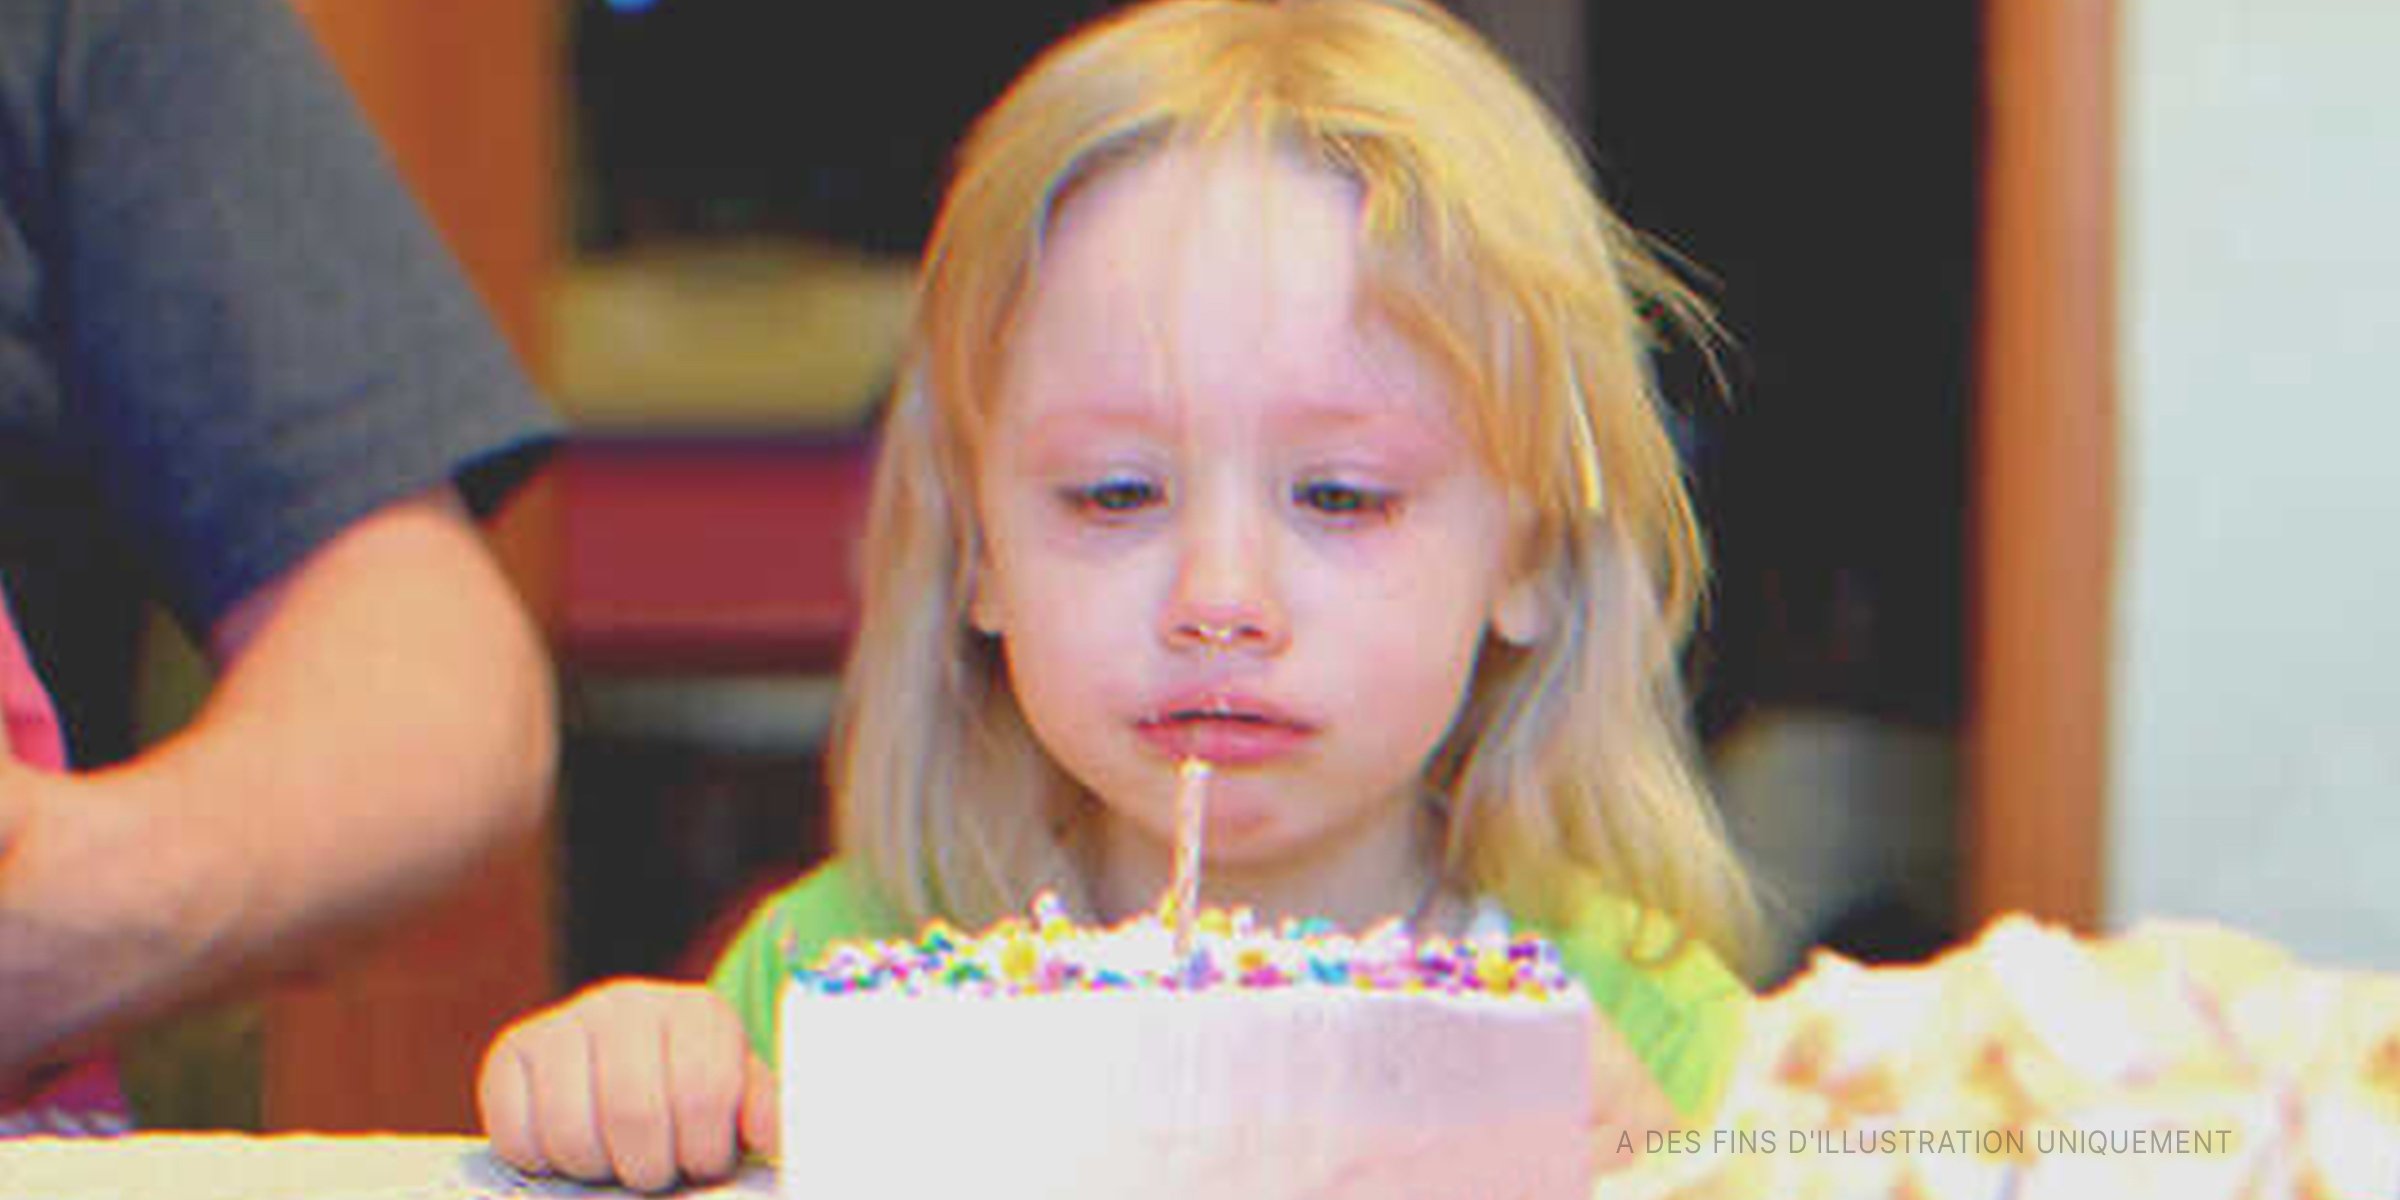 Une petite fille devant un gâteau d'anniversaire | Shutterstock